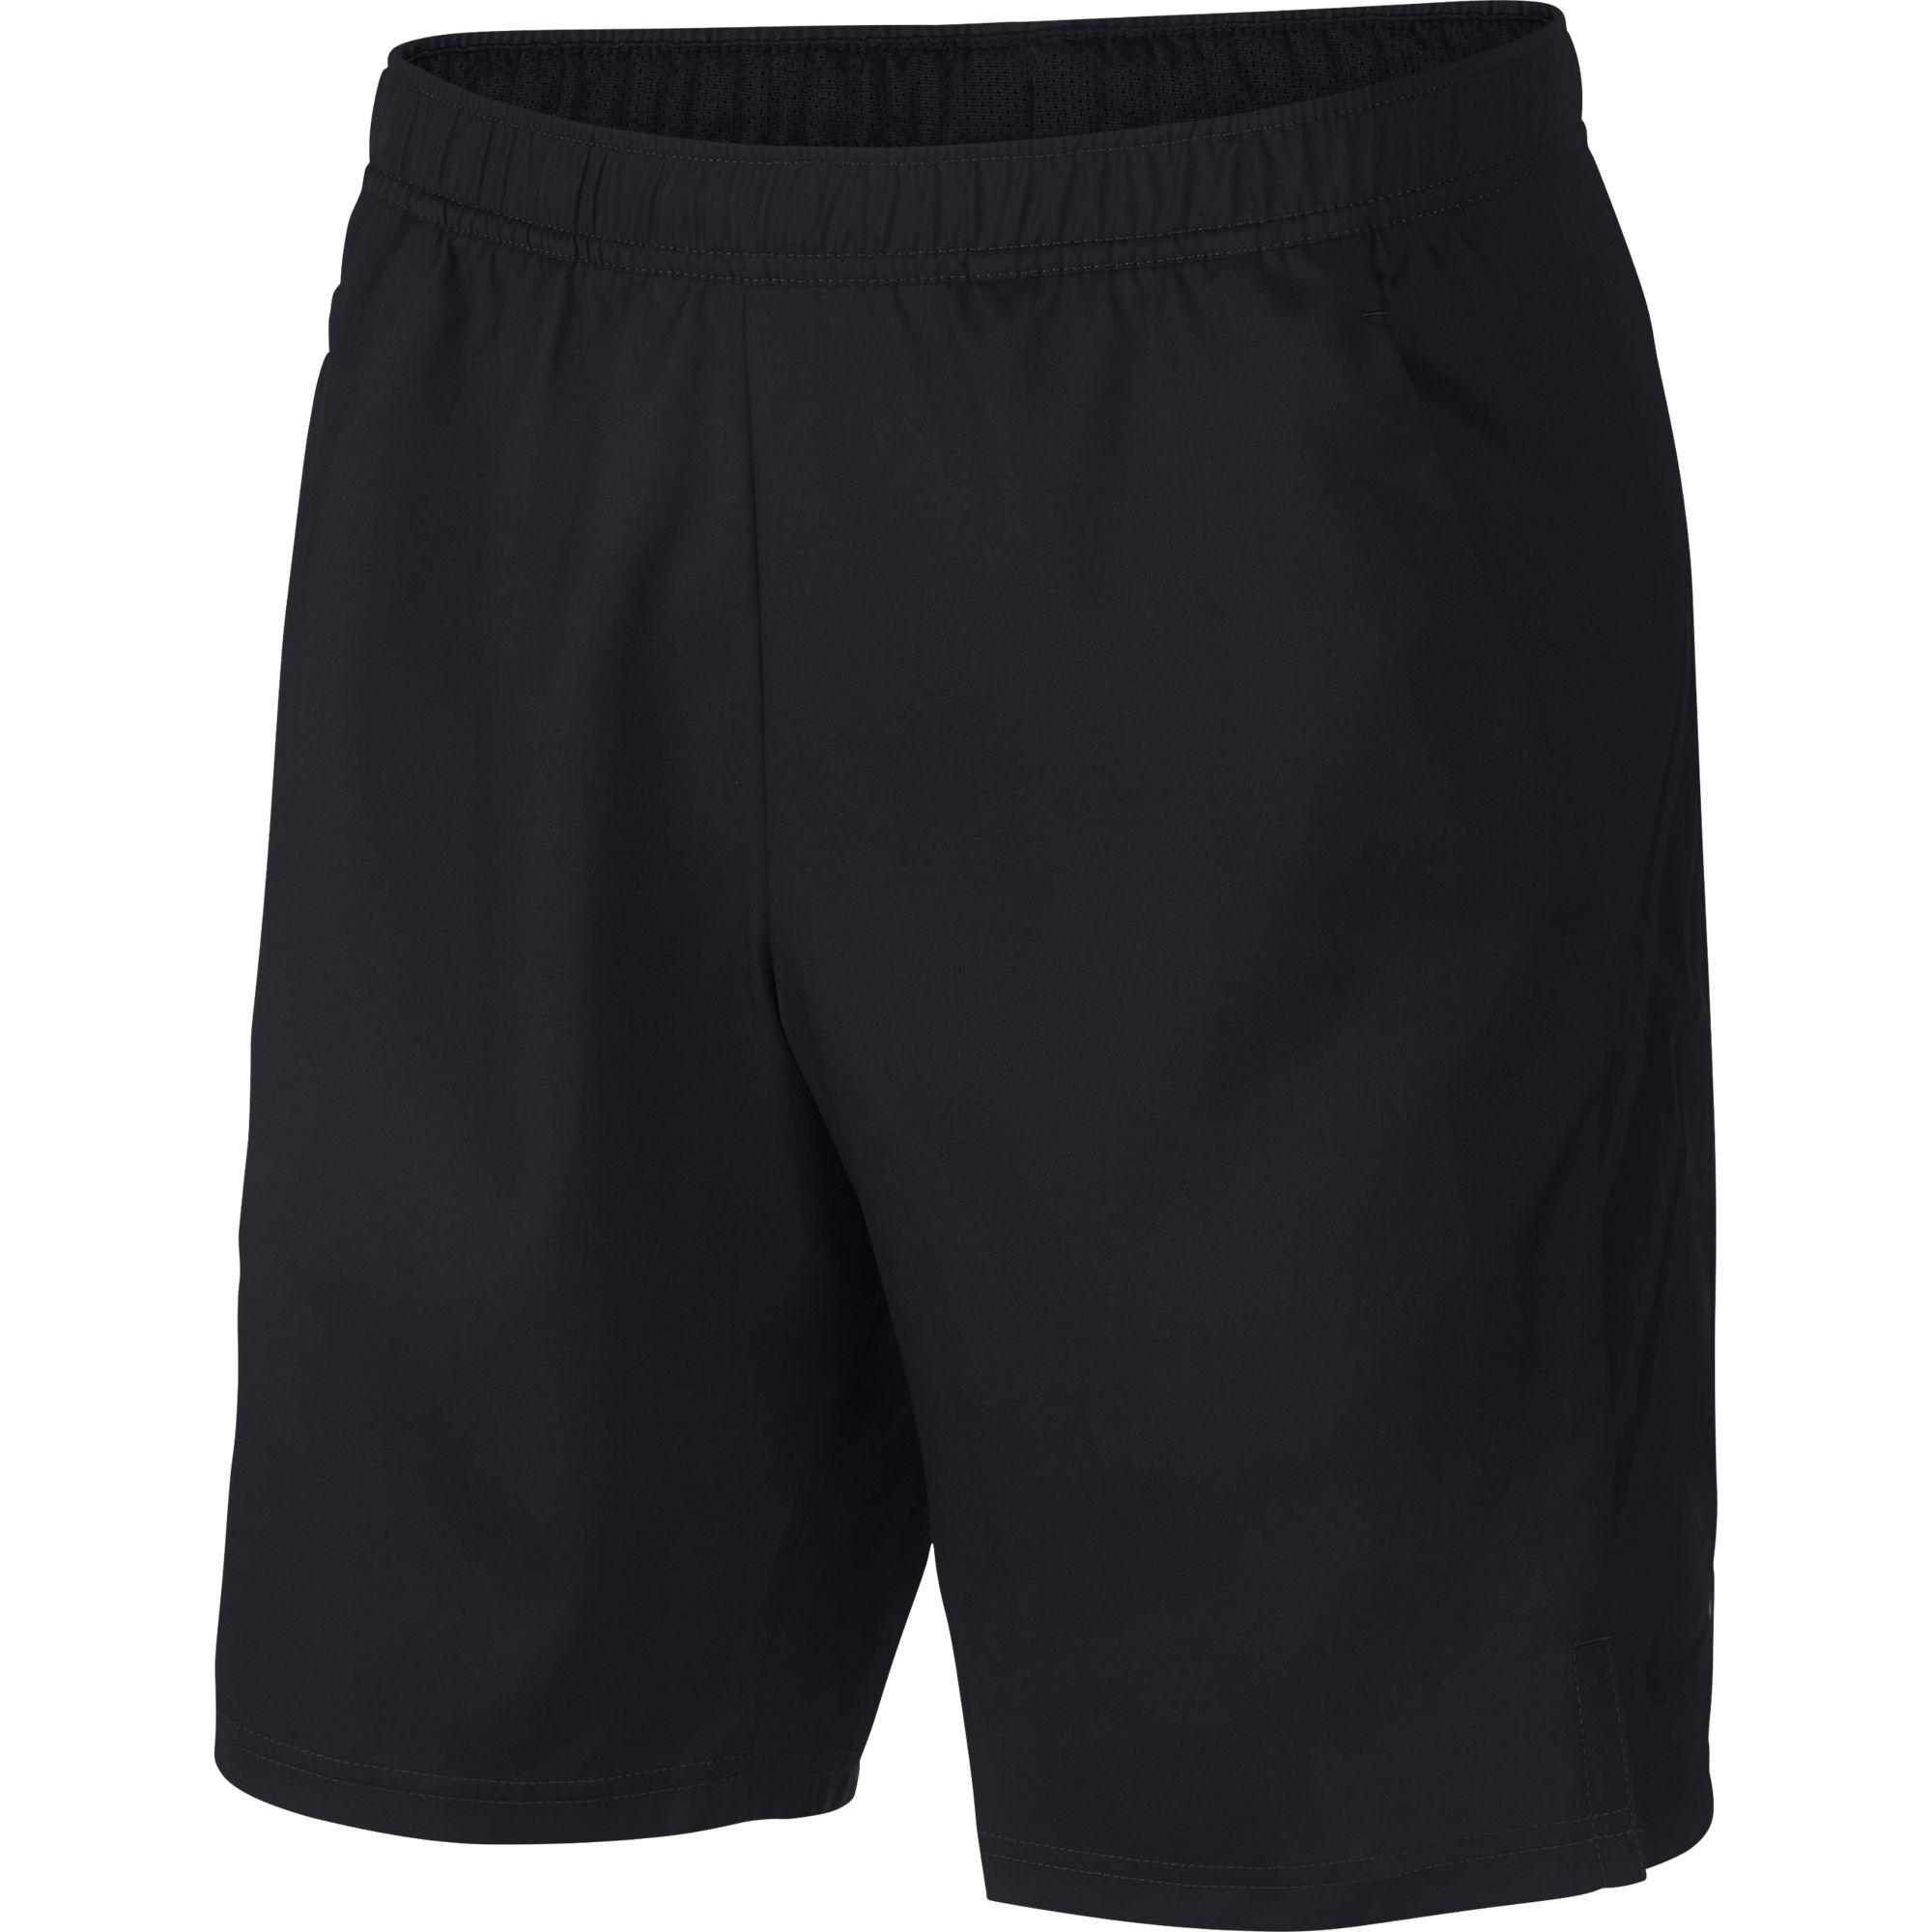 Nike Mens Dry 9 Inch Shorts - Black - Tennisnuts.com